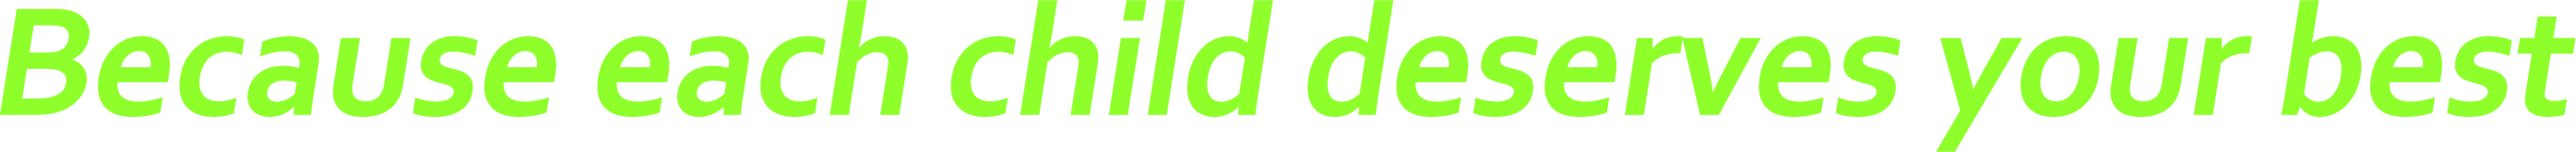 SubBrand Master Logo Greenery